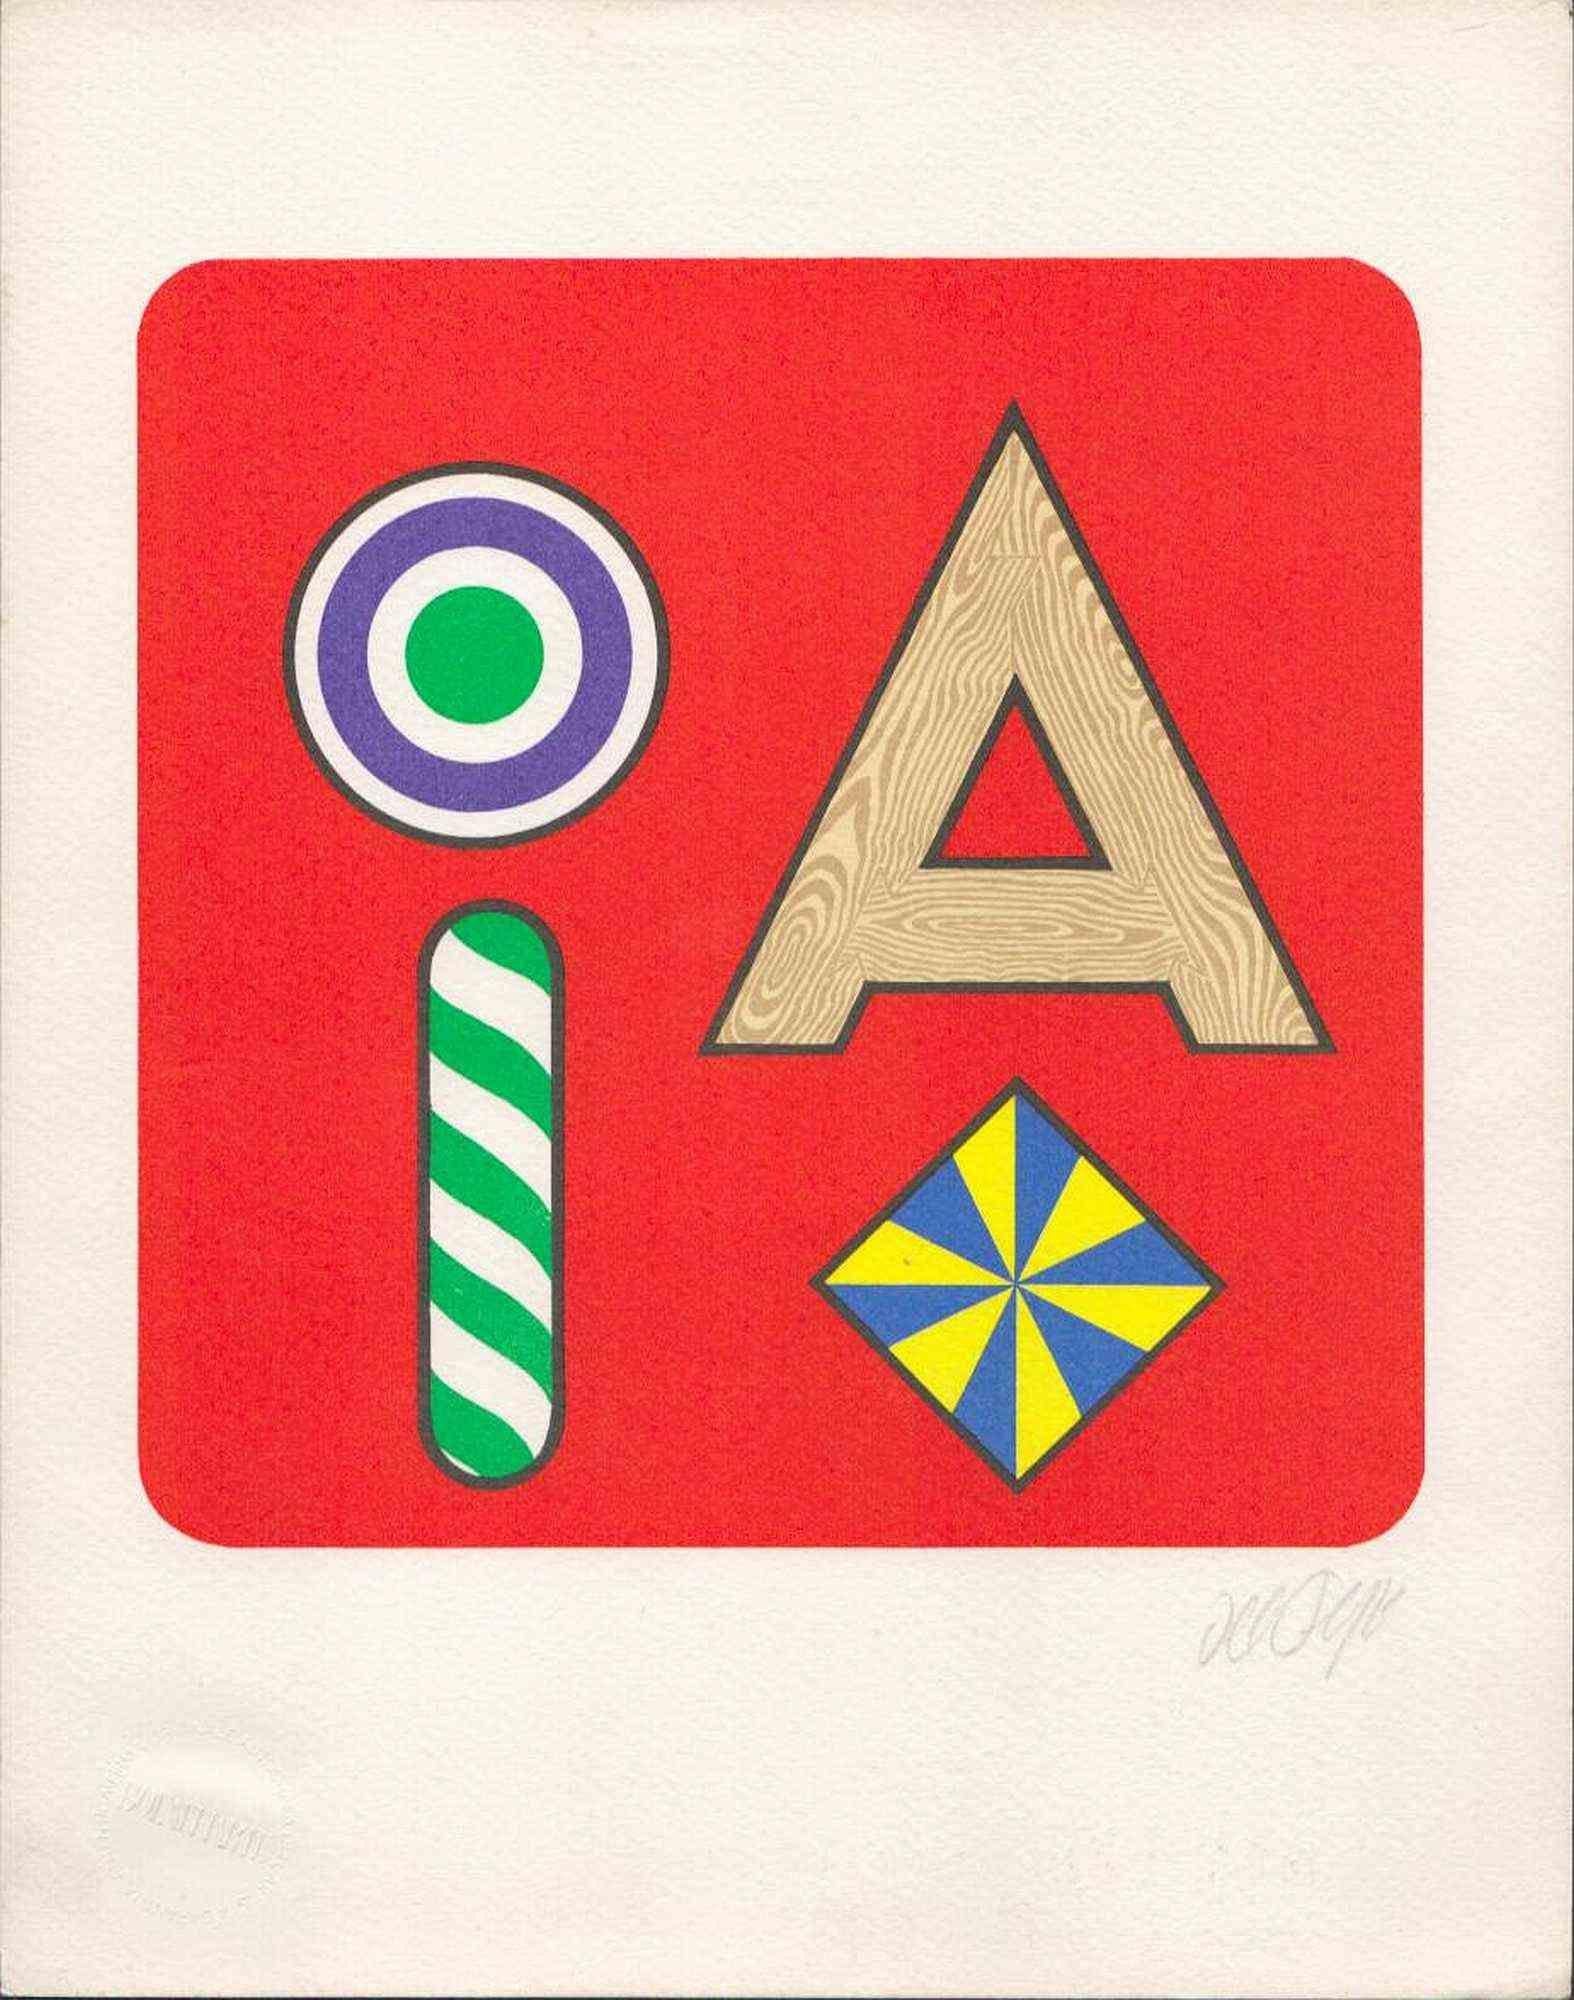 Lucio Del Pezzo (1933-2020)

Lettre A, 1971
Photolithographie, 30 x 24 cm
De la série L'Alphabet de Bolaffi. Edition 3.433 / 5000, signée au crayon par l'artiste. Imprimé sur le papier avec le timbre en relief de BolaffiArte.
Excellent état. Avec